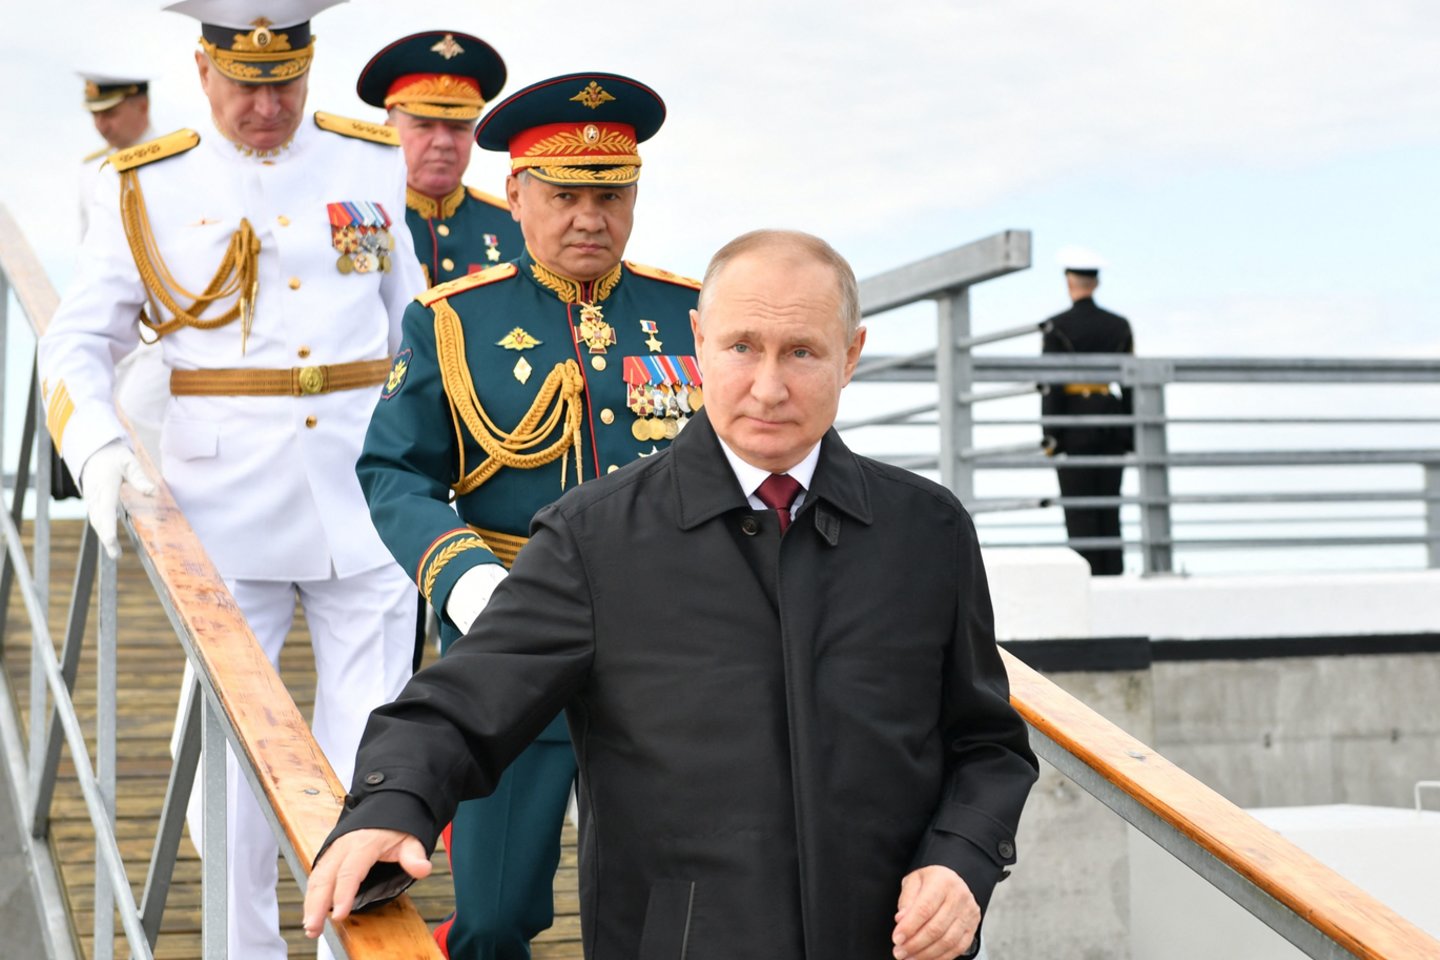  V. Putinas priėmė pagrindinį karinio laivyno paradą Sankt Peterburge.  <br> AFP/Scanpix nuotr.